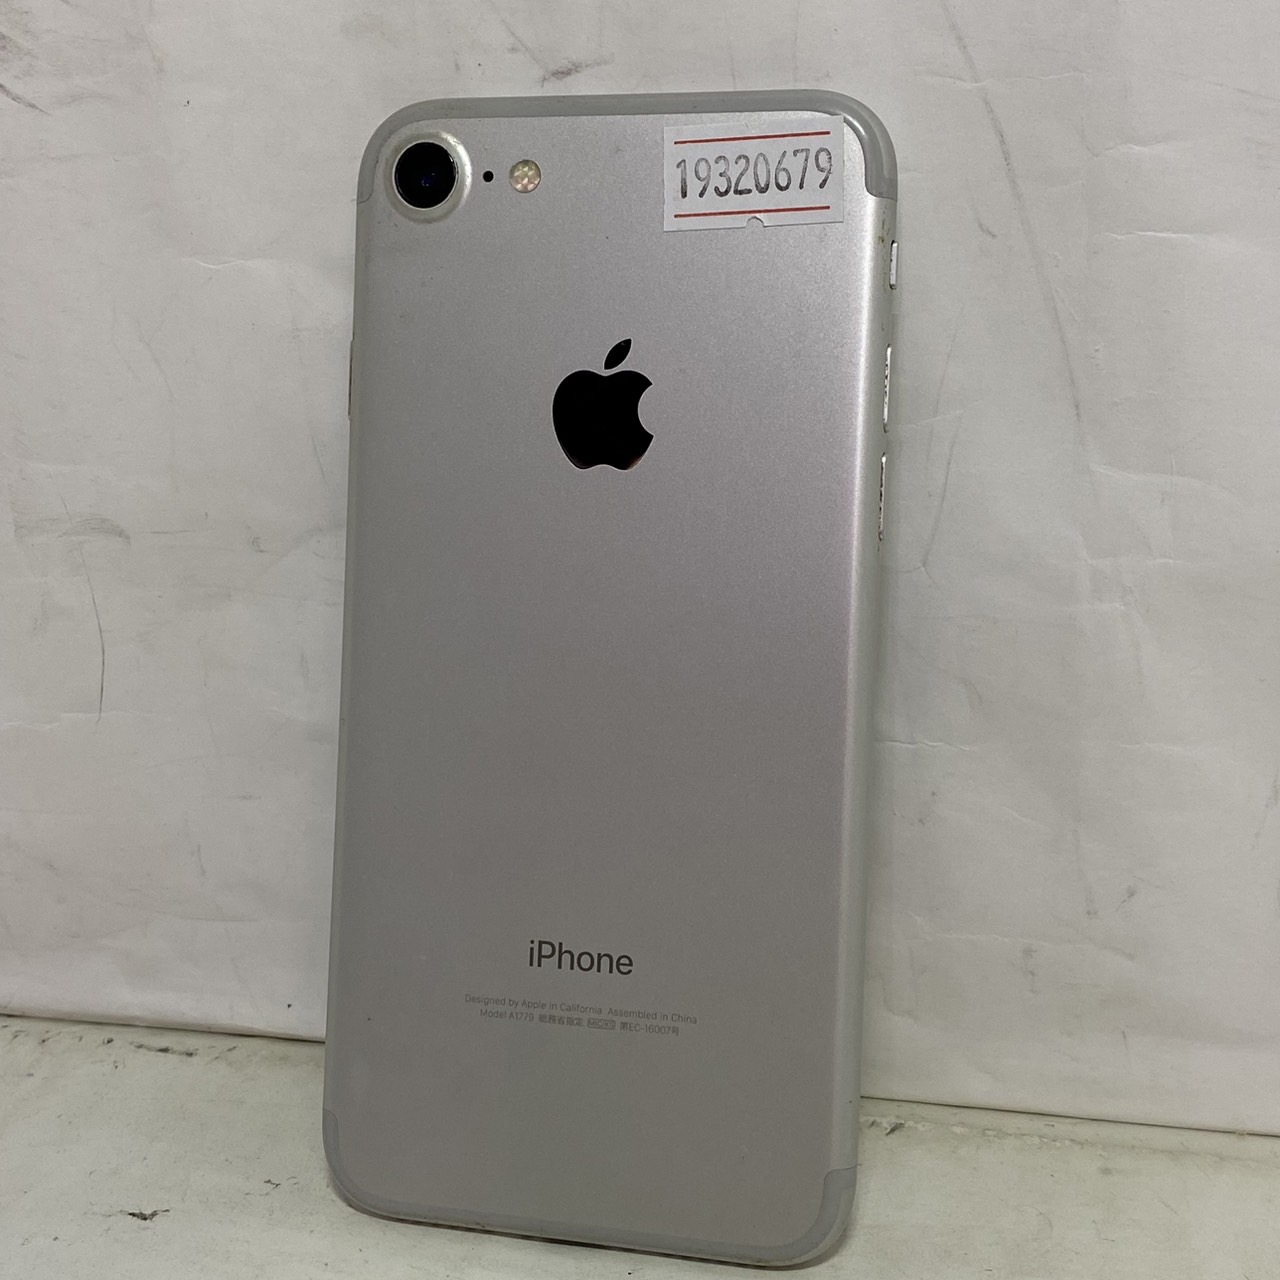 APPLE(アップル) iPhone 7 128GB SIMフリー [シルバー]の激安通販